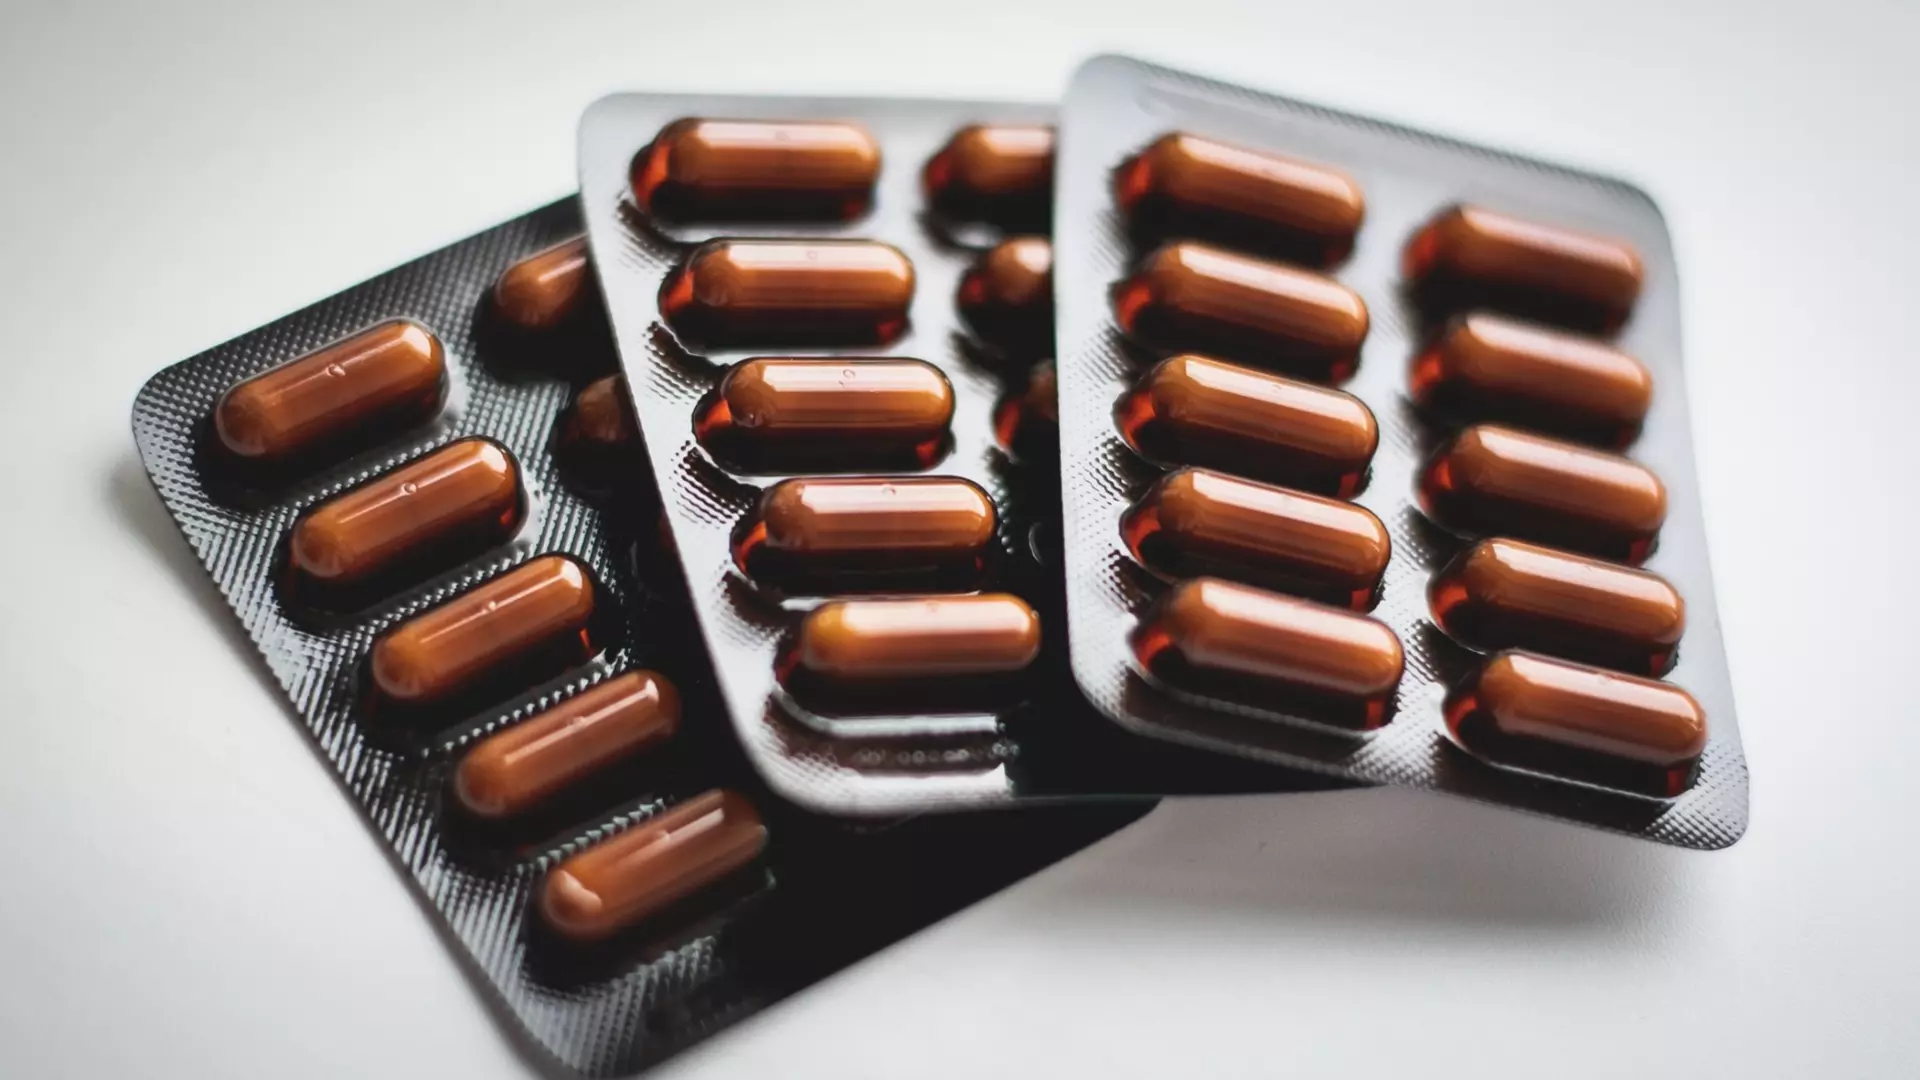 Компания «Промомед» выпускает на рынок препарат для борьбы с ожирением и диабетом